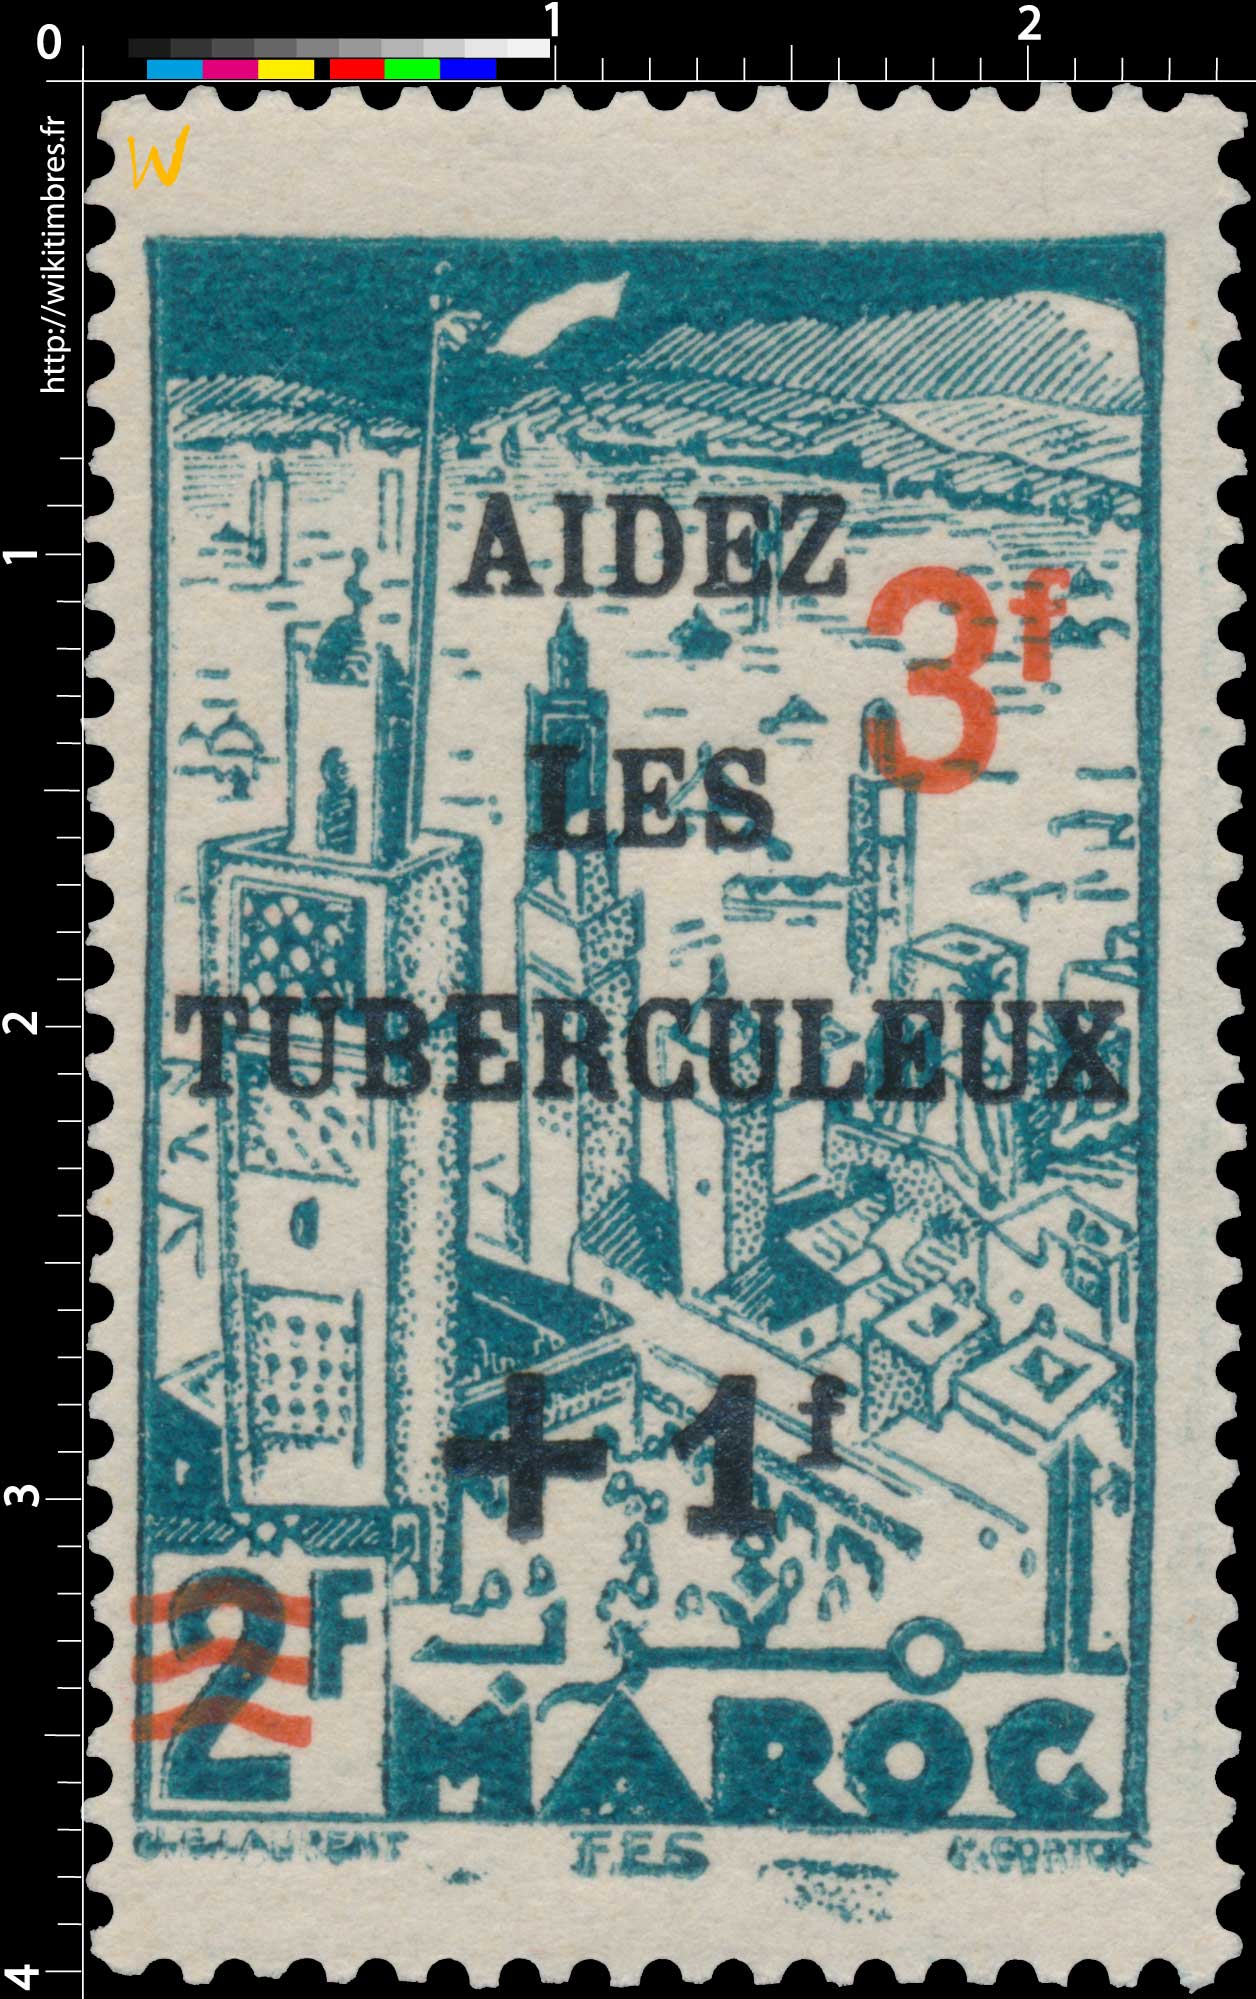 1946 Maroc - Fès